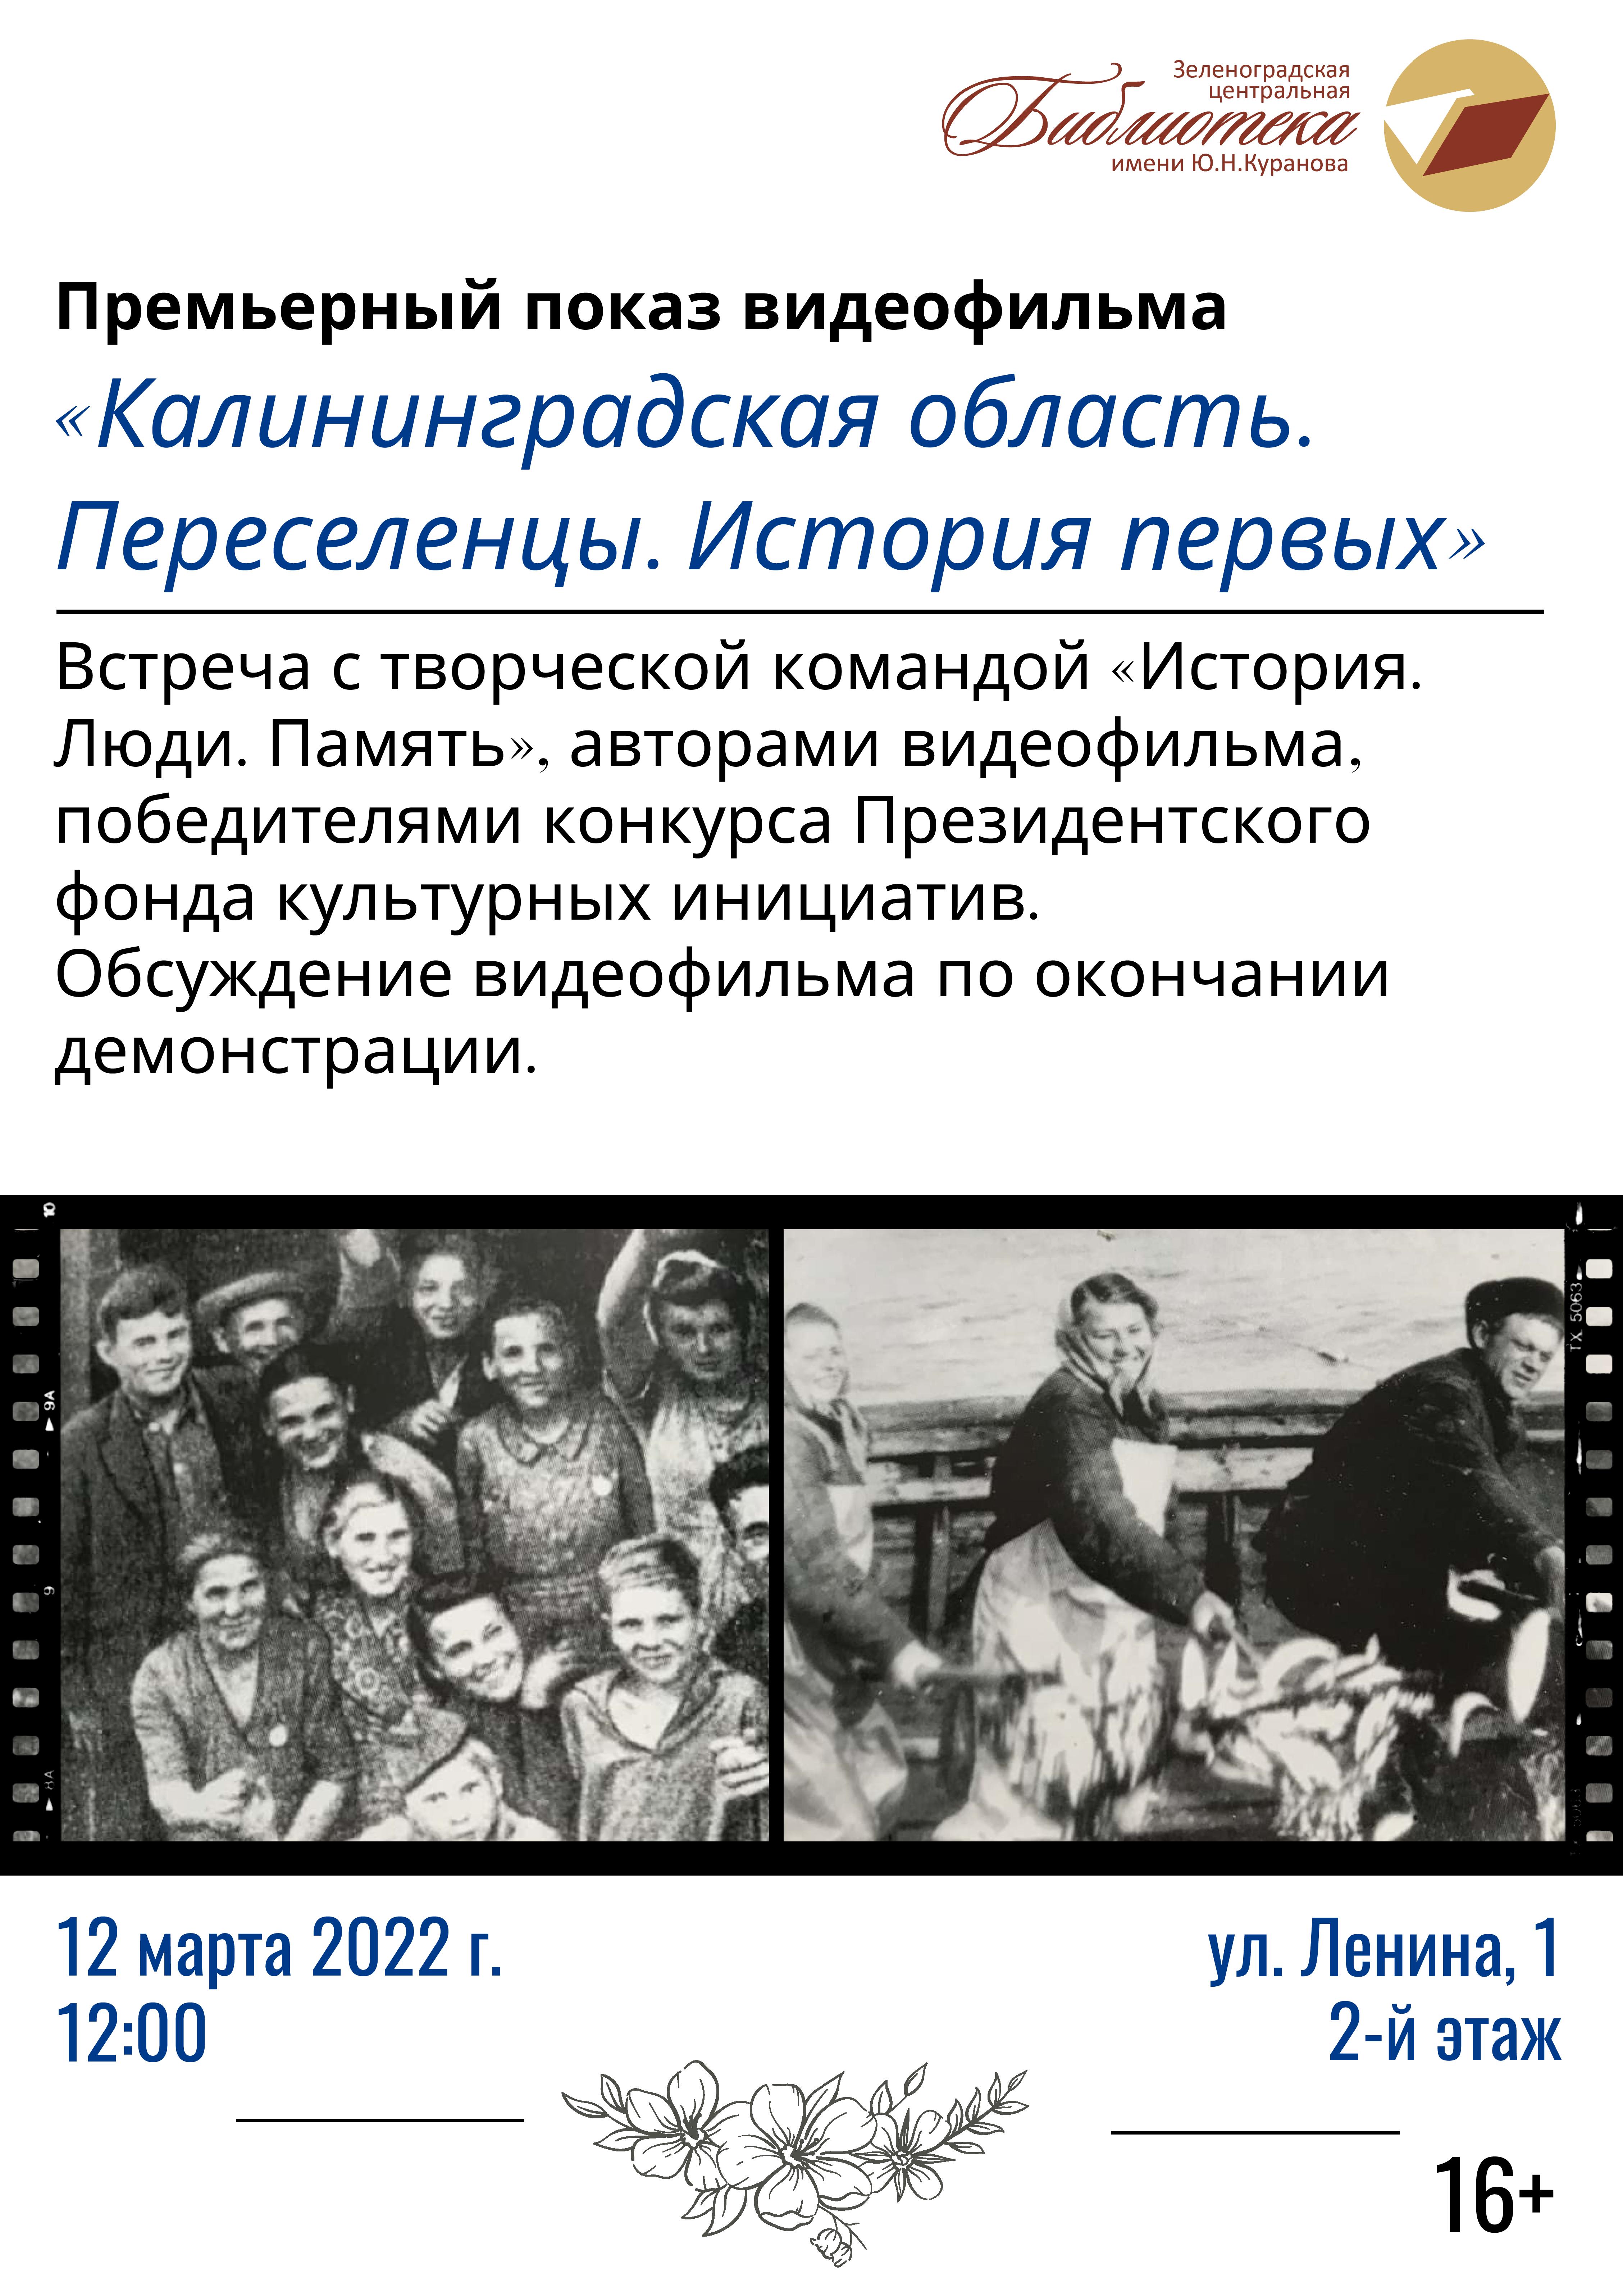 12 марта в библиотеке имени Ю. Куранова пройдёт премьера документального фильма о первых переселенцах в Калининградскую область